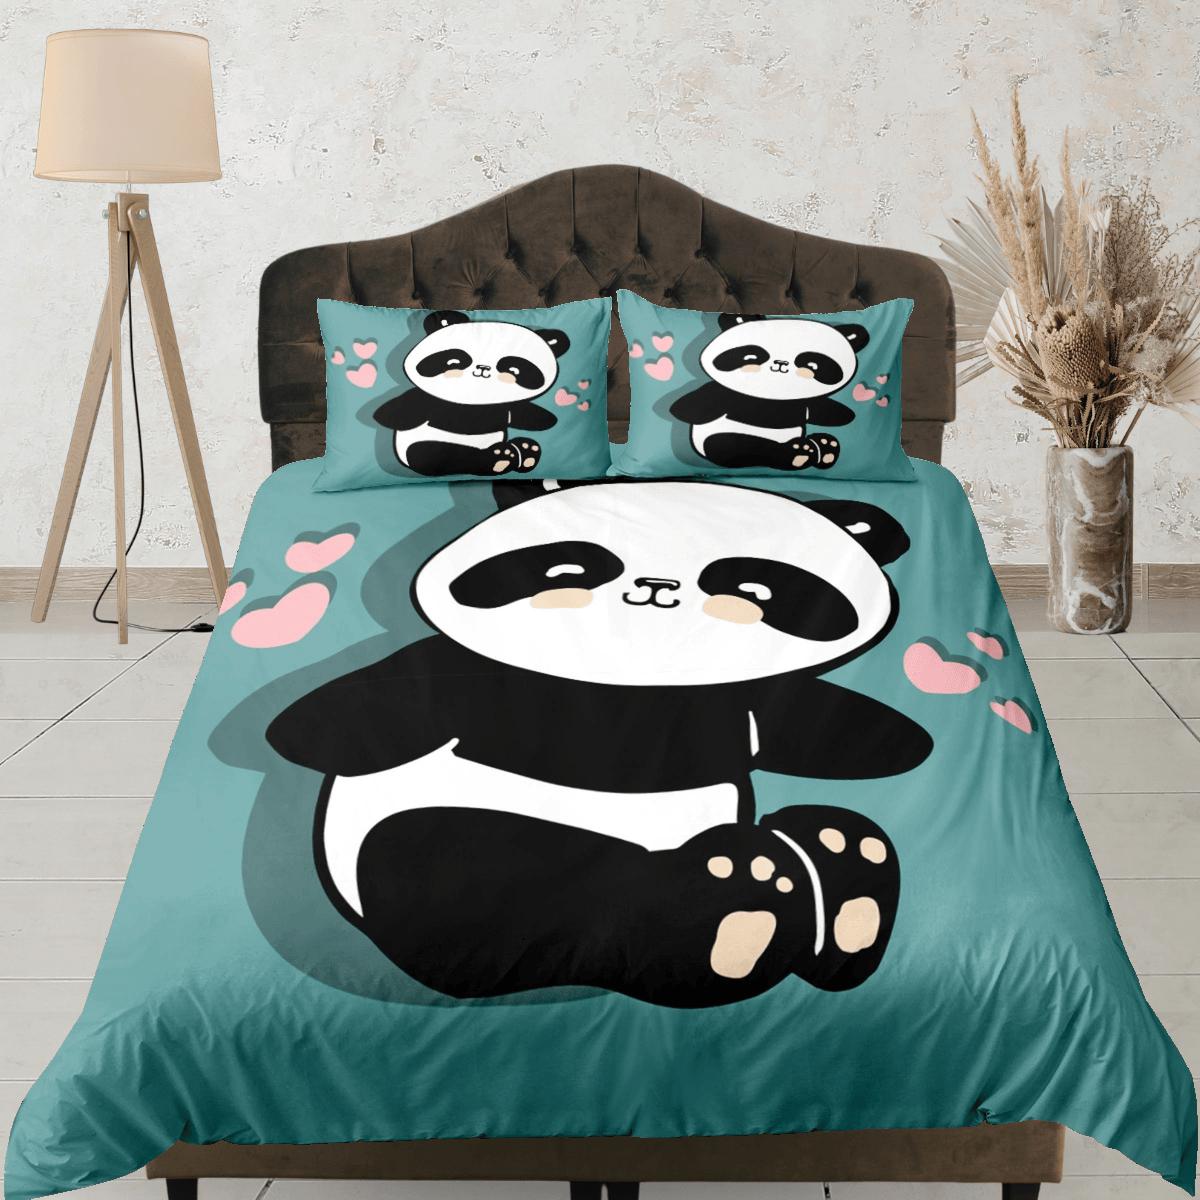 daintyduvet Panda teal green duvet cover set kids, bedding set full, king, queen, dorm bedding, toddler bedding, aesthetic bedspread, panda lovers gift